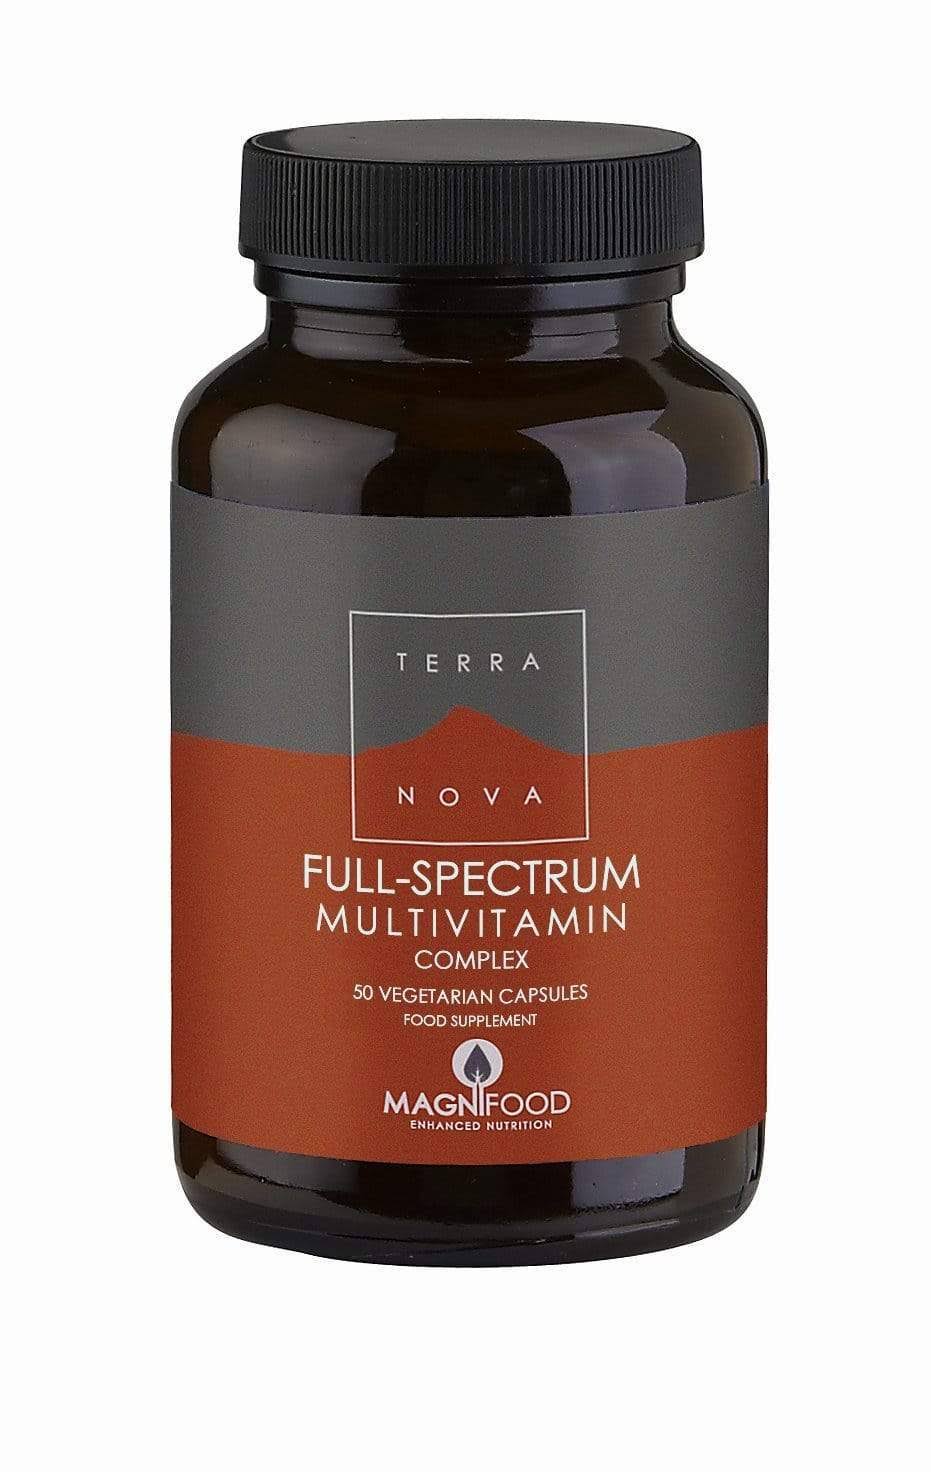 Terra Nova Full-Spectrum Multivitamin Complex Supplement - 50 Vegetarian Capsules